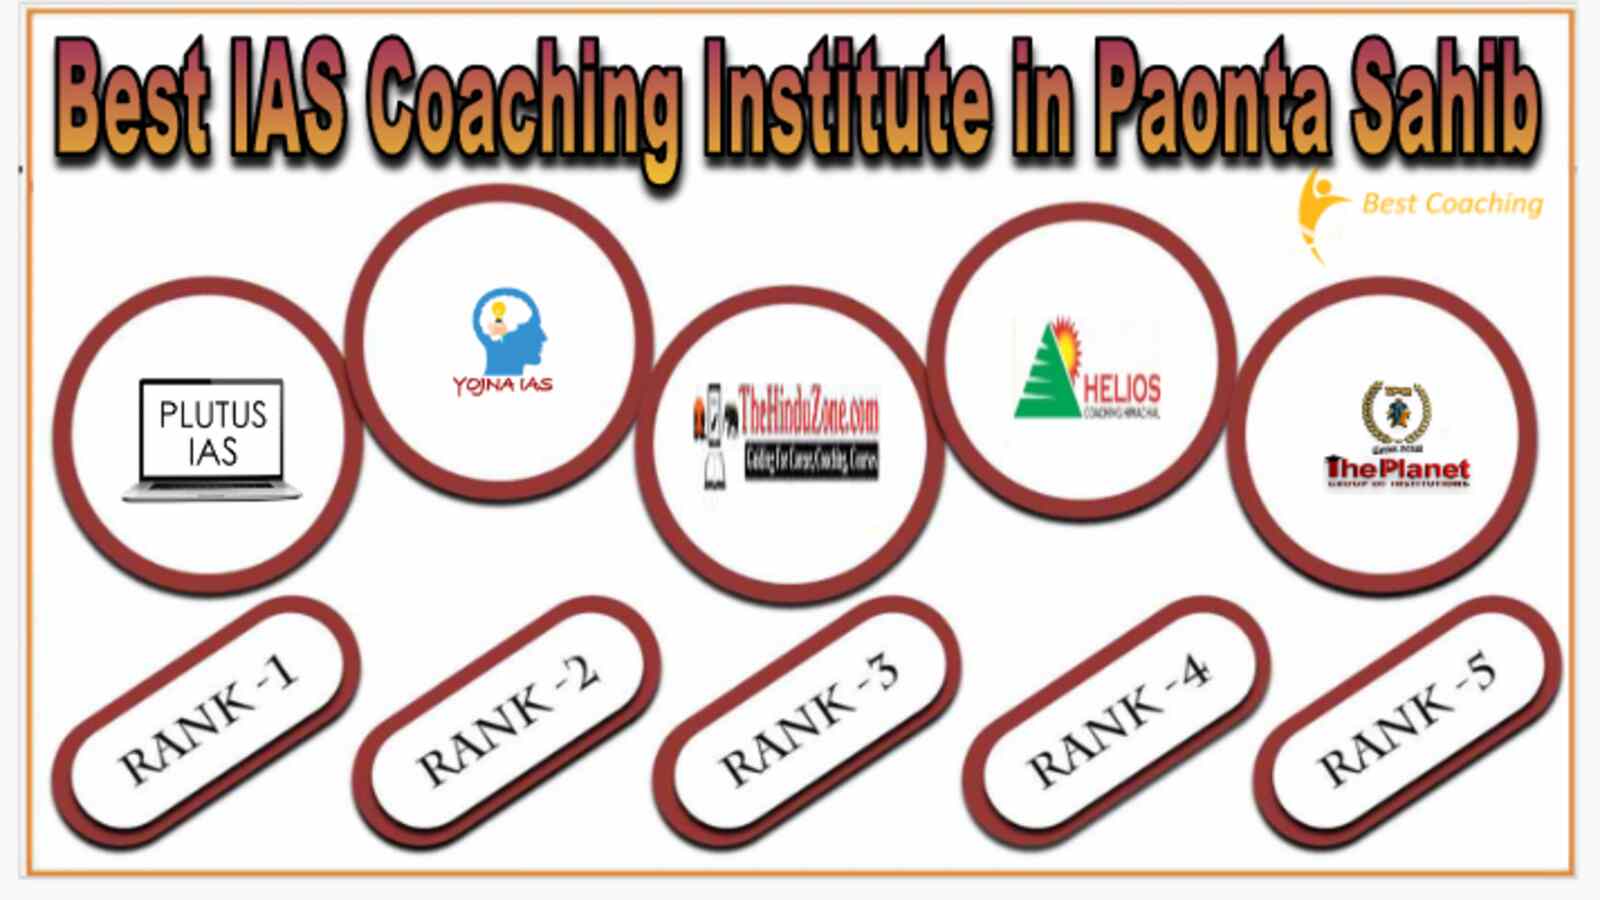 Best IAS Coaching Institute in Paonta Sahib